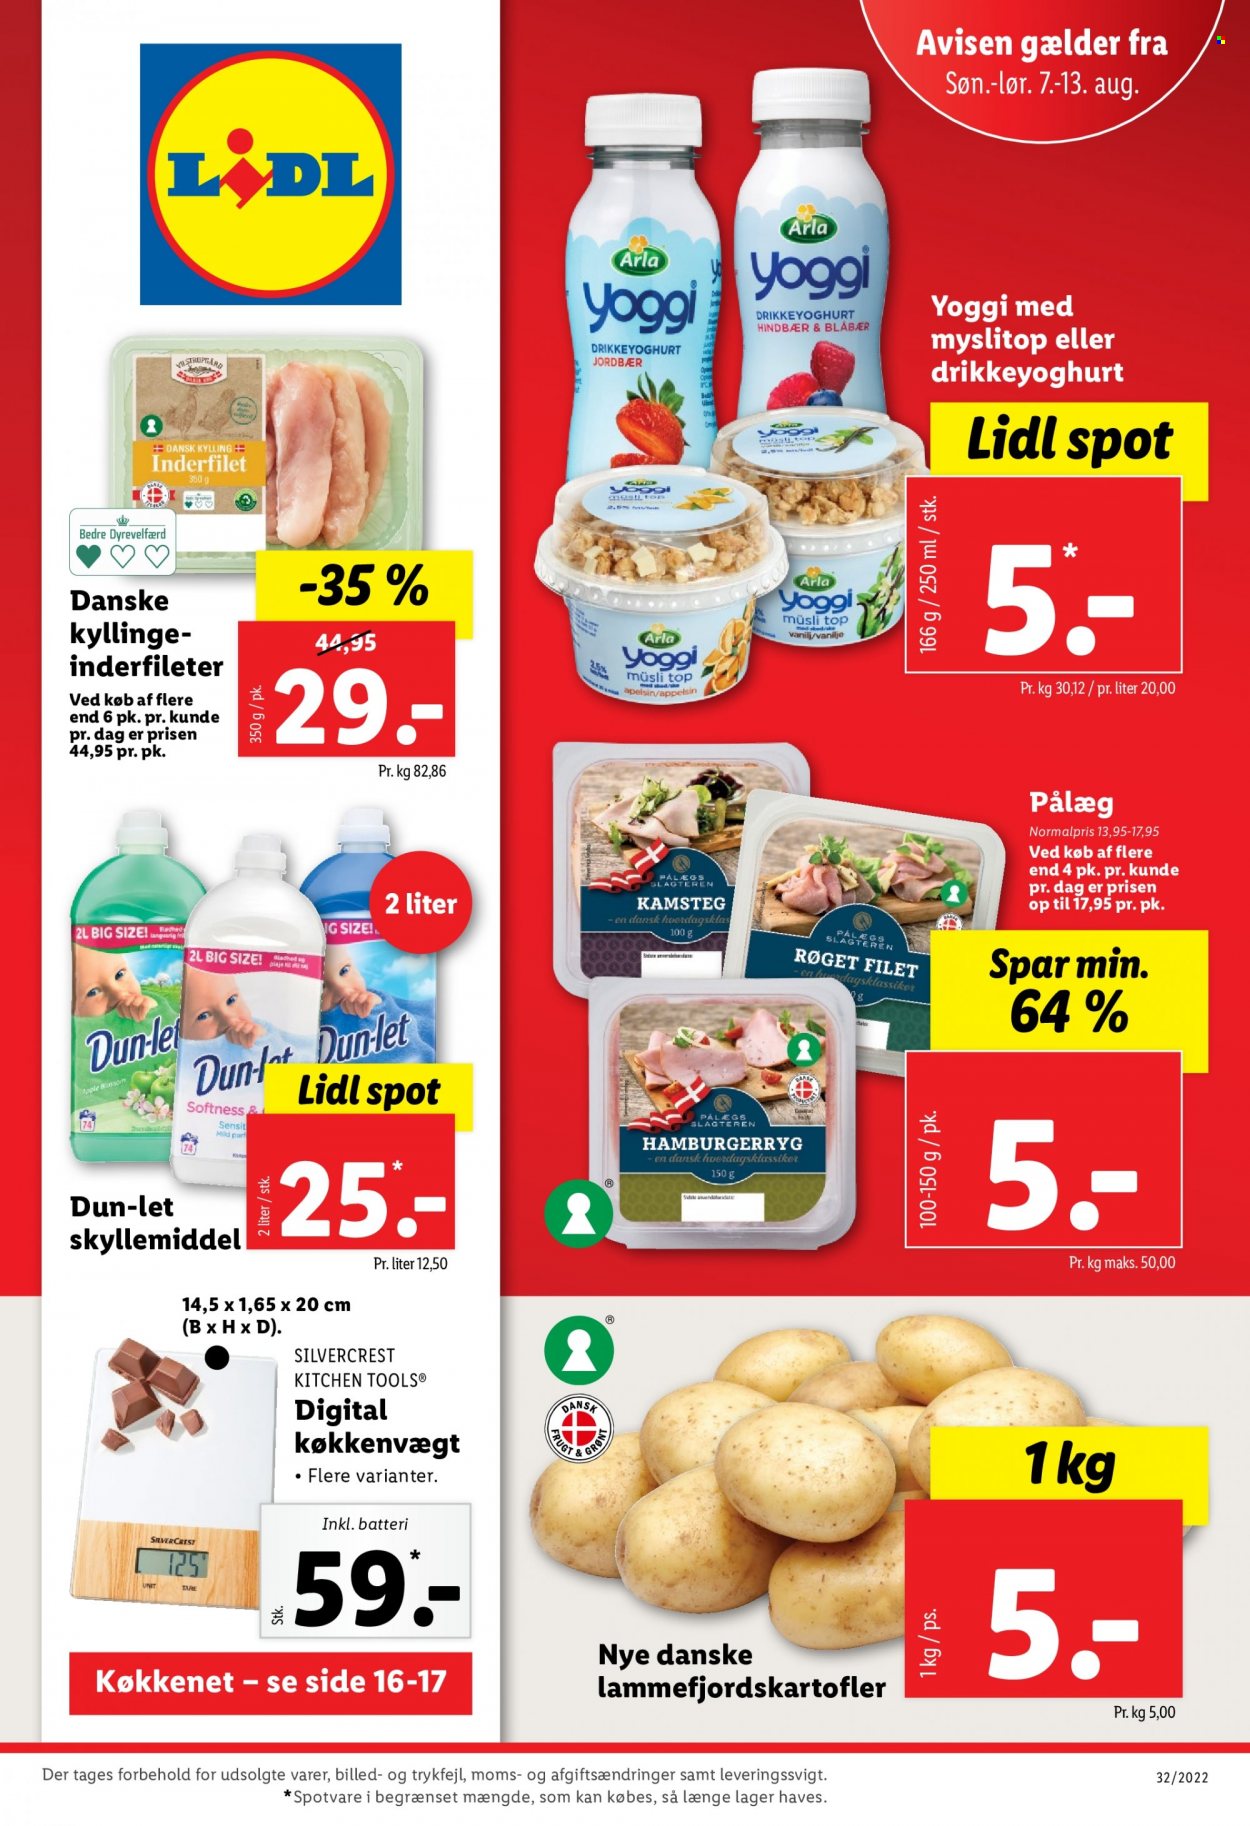 thumbnail - Lidl tilbud  - 7.8.2022 - 13.8.2022 - tilbudsprodukter - pålæg, yoghurt, skyllemiddel. Side 1.